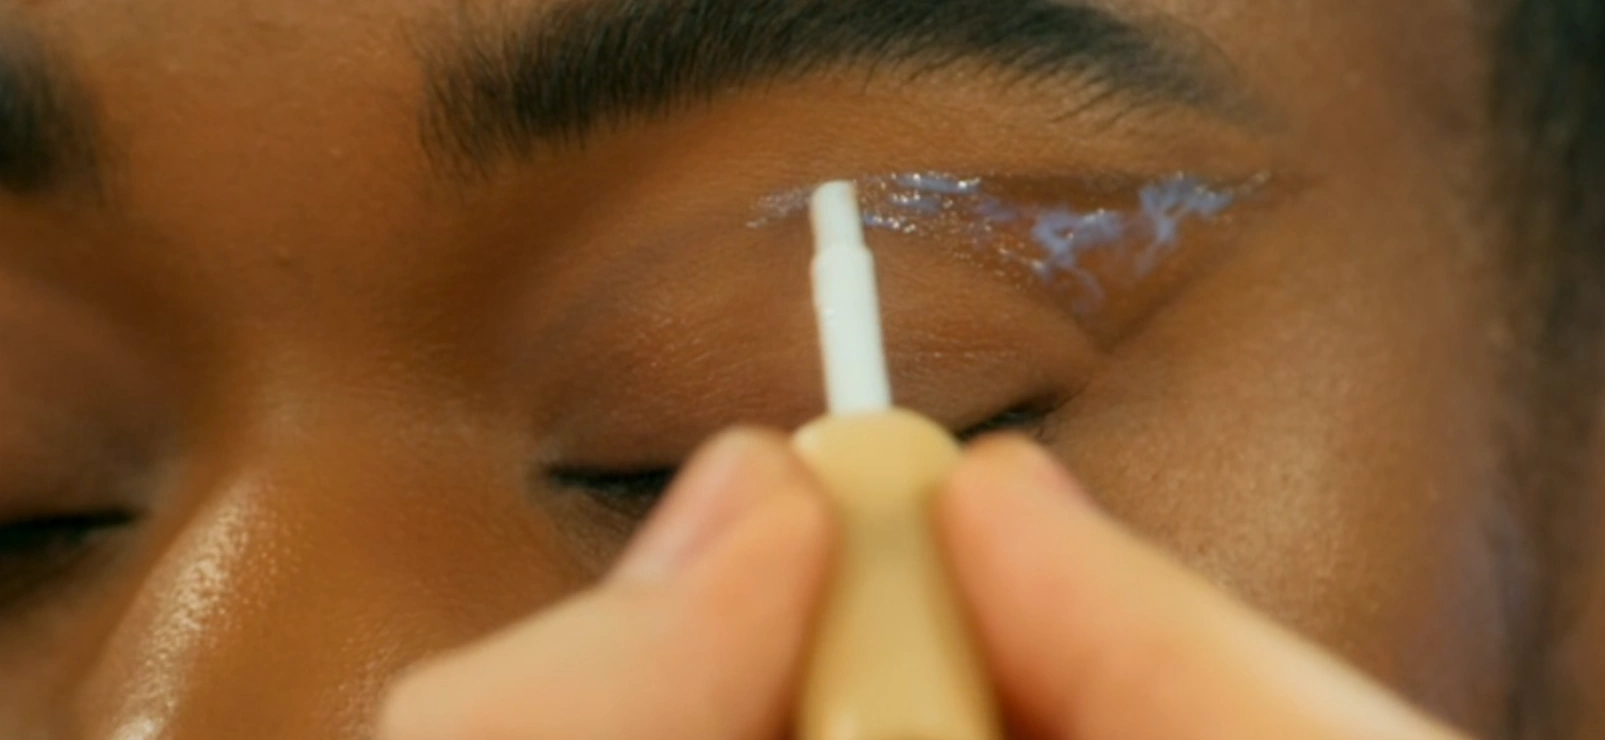 MUA applying lash glue around the eye of a model